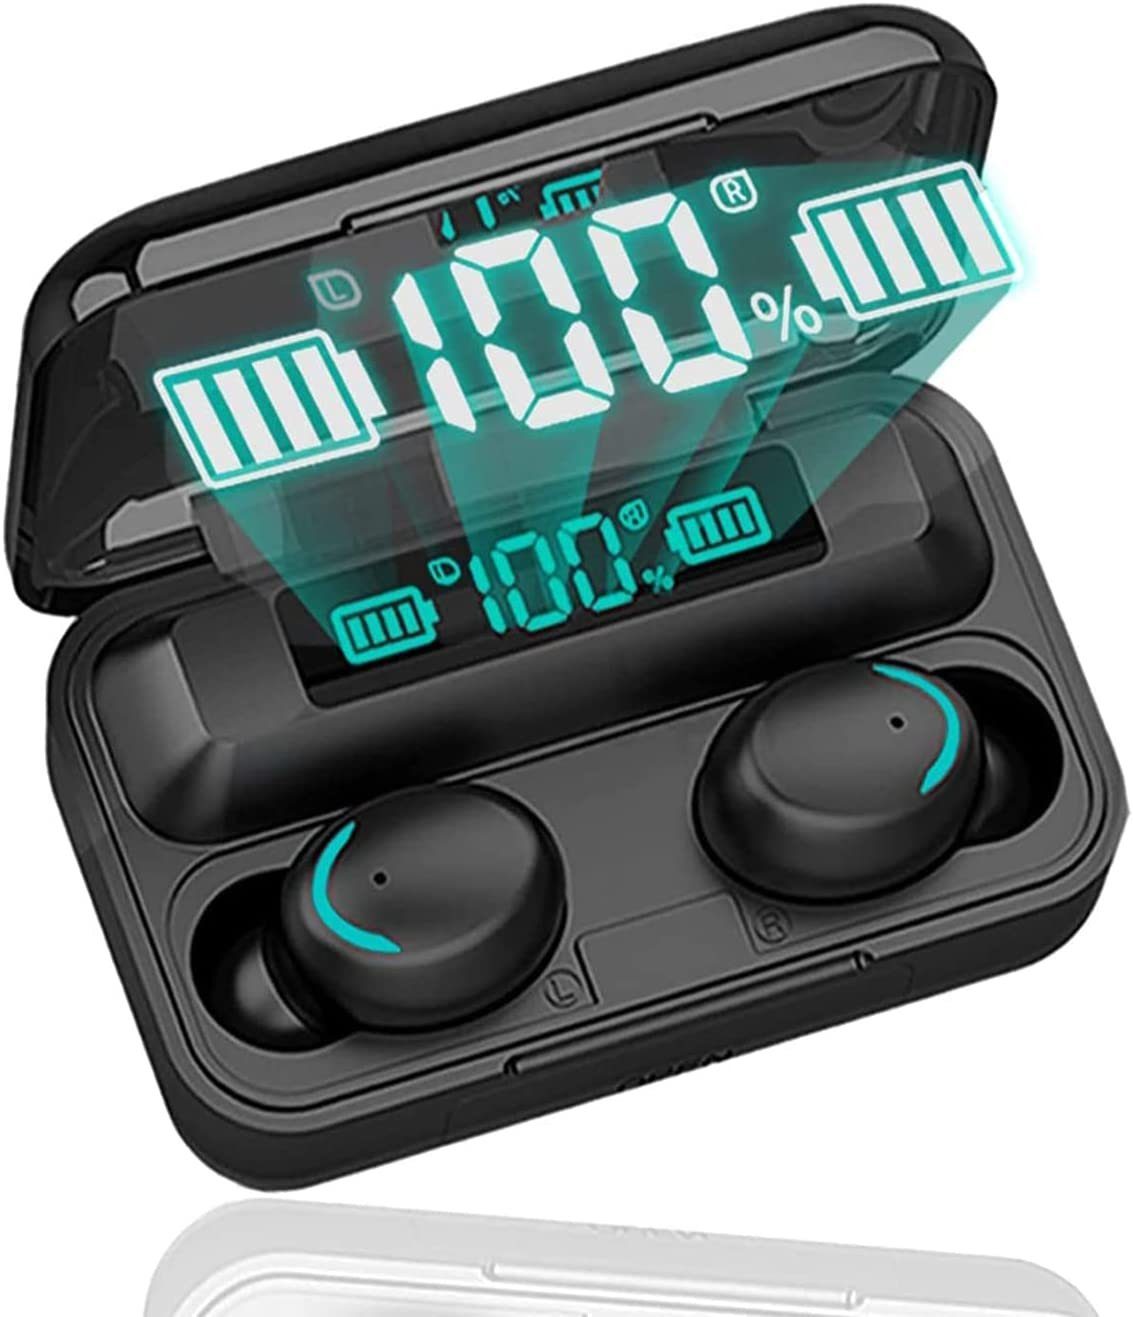 LifeImpree TWS wireless In-Ear-Kopfhörer (IPX7 Wasserdicht, Voice Assistant, Siri, Bluetooth, Wireless, IPX7 wasserdichte Ohrhörer, Kabellos Kopfhörer) schwarz